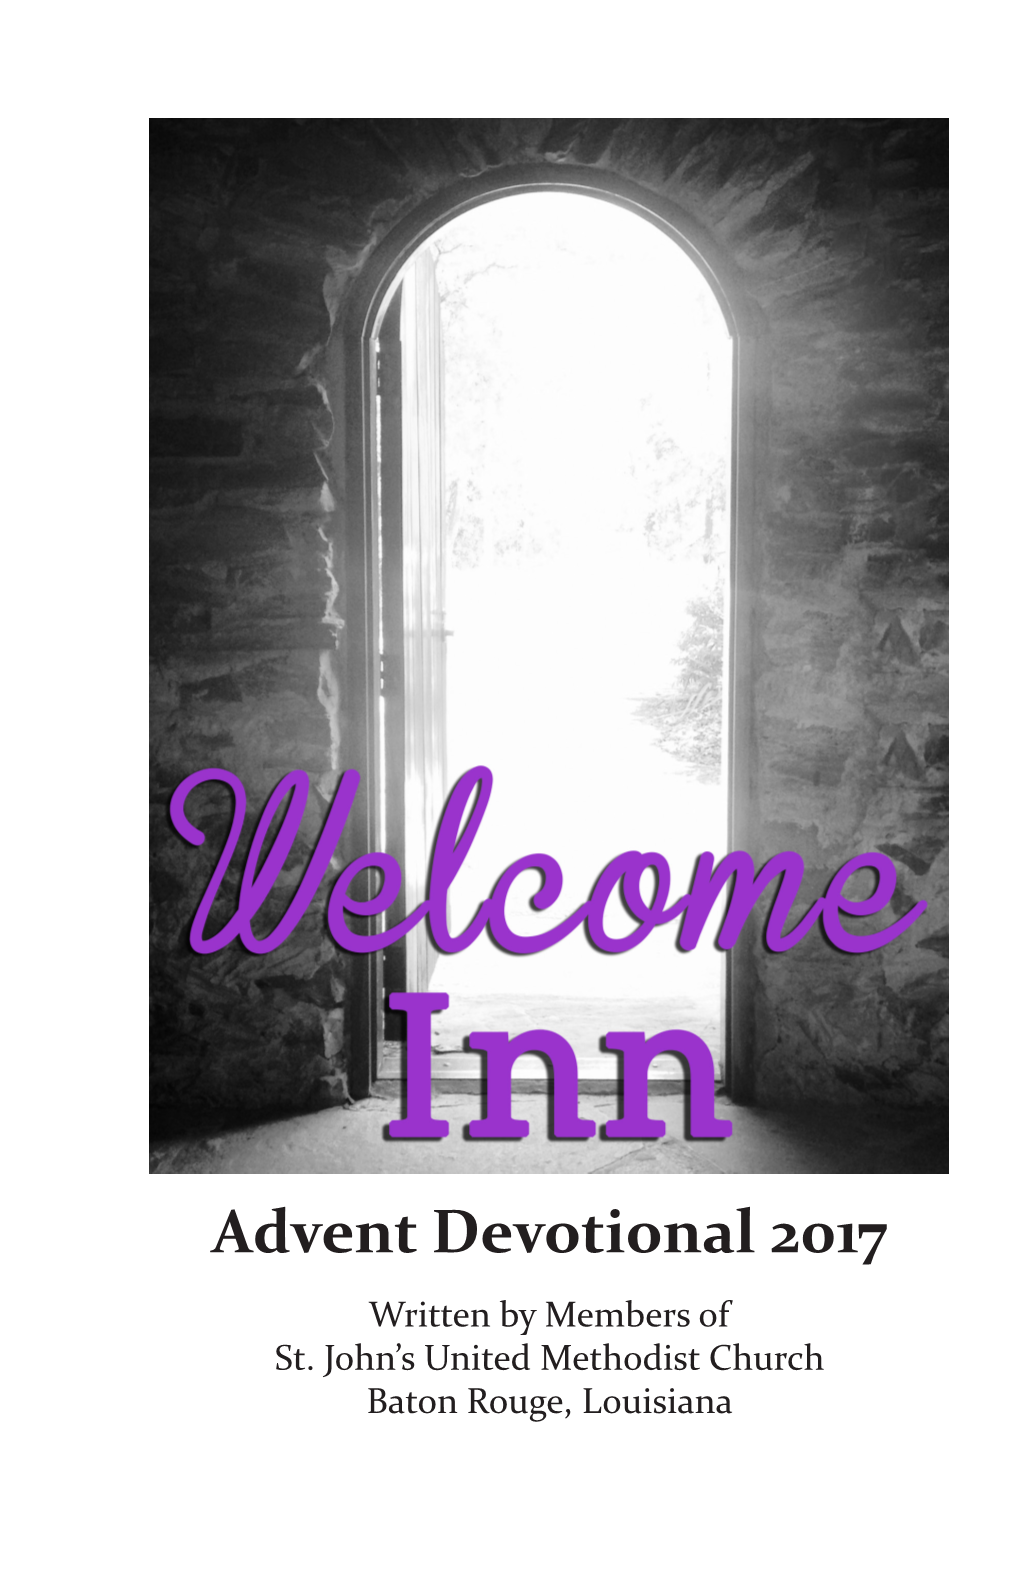 Advent Devotional 2017 Written by Members of St